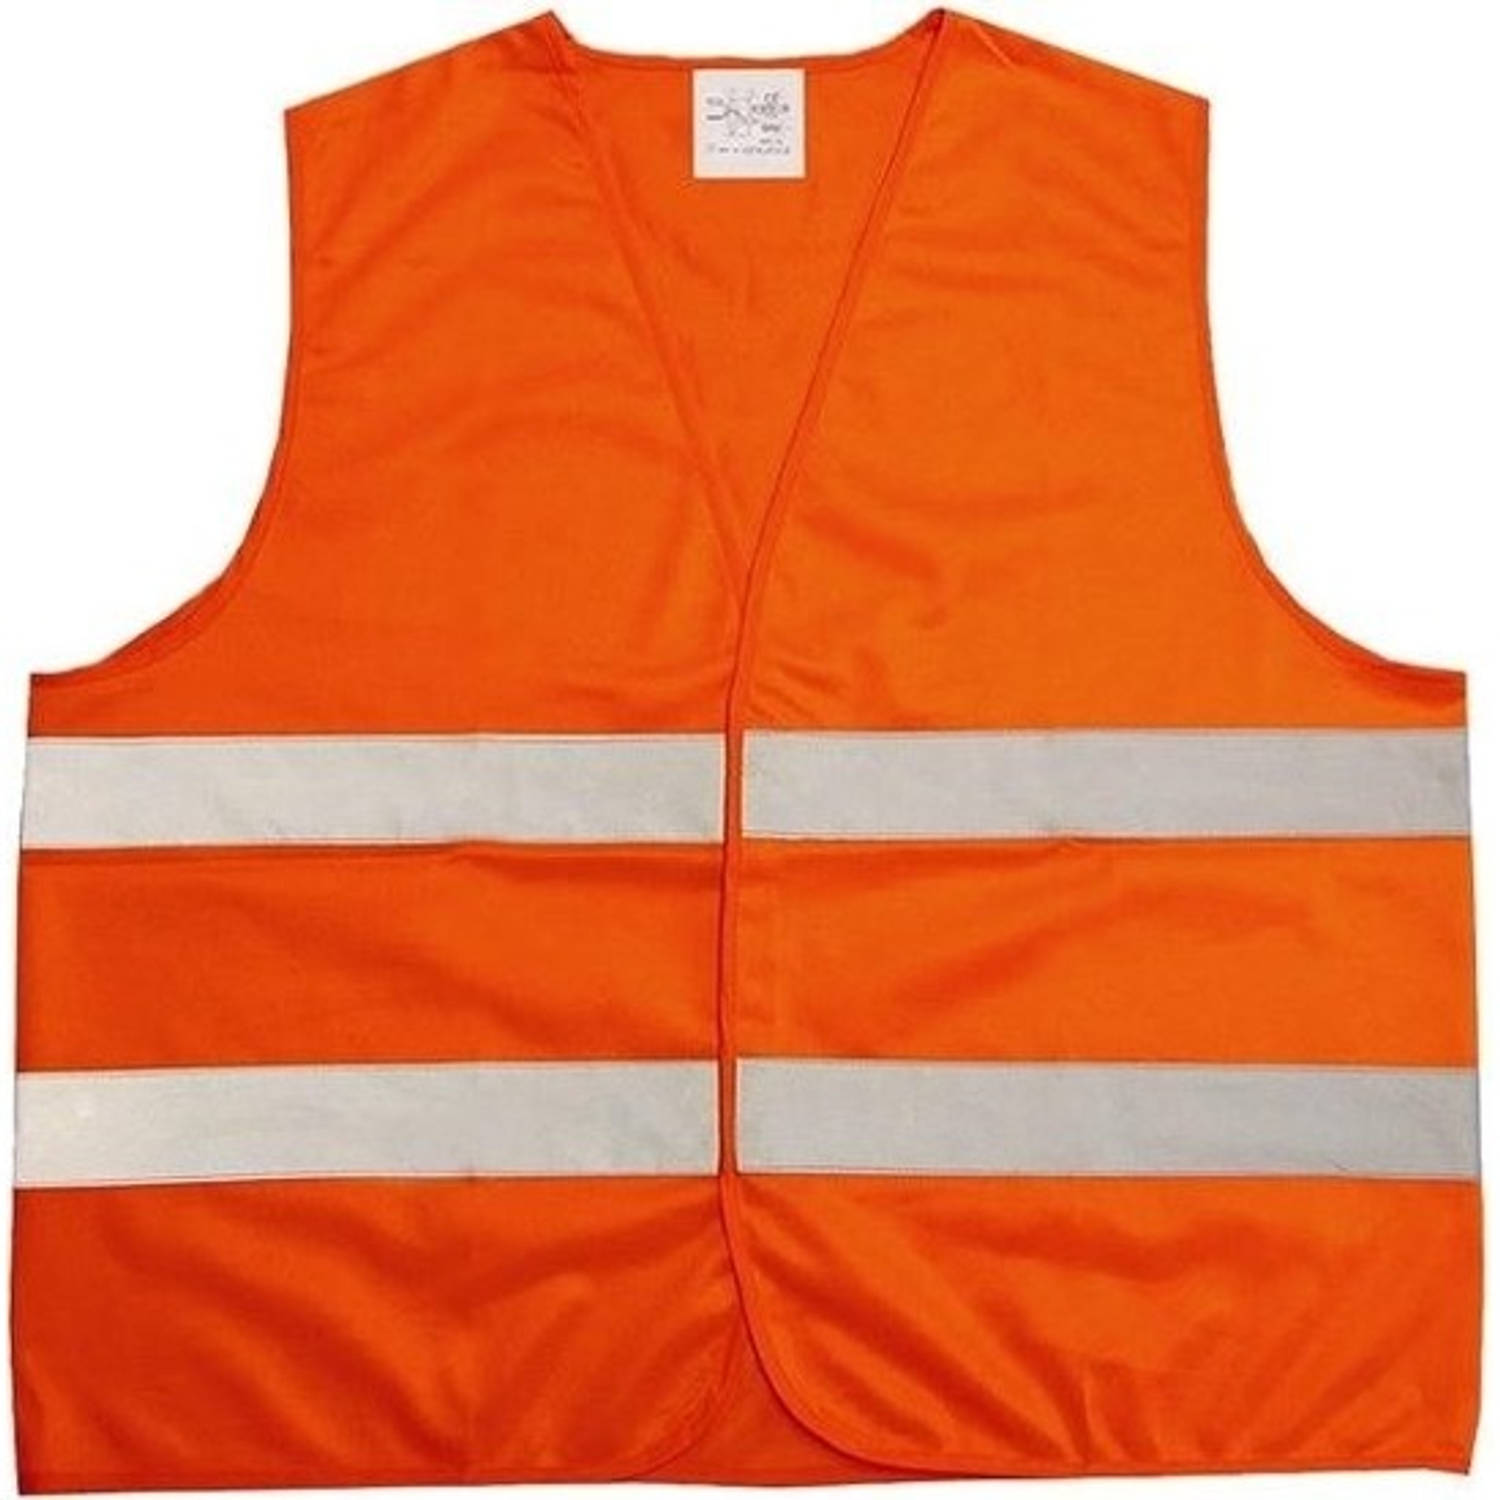 4x Neon oranje veiligheidsvest voor volwassenen - Veiligheidshesje